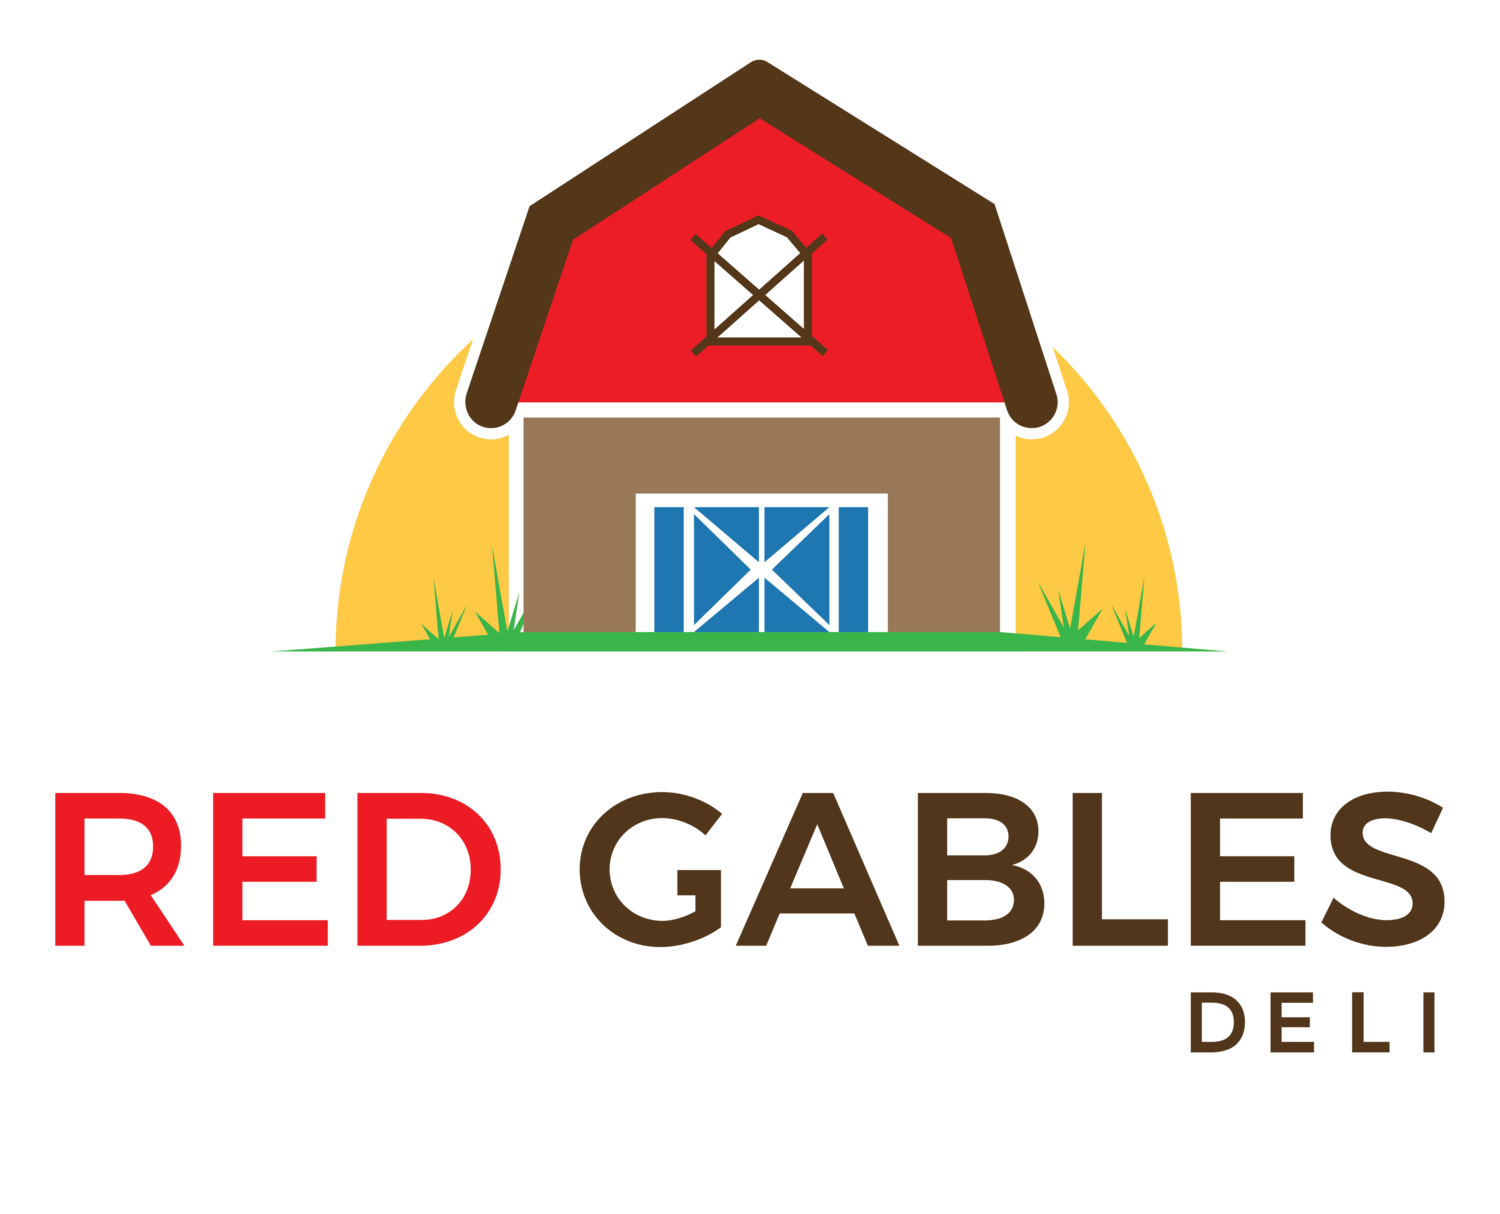 Red Gables Deli